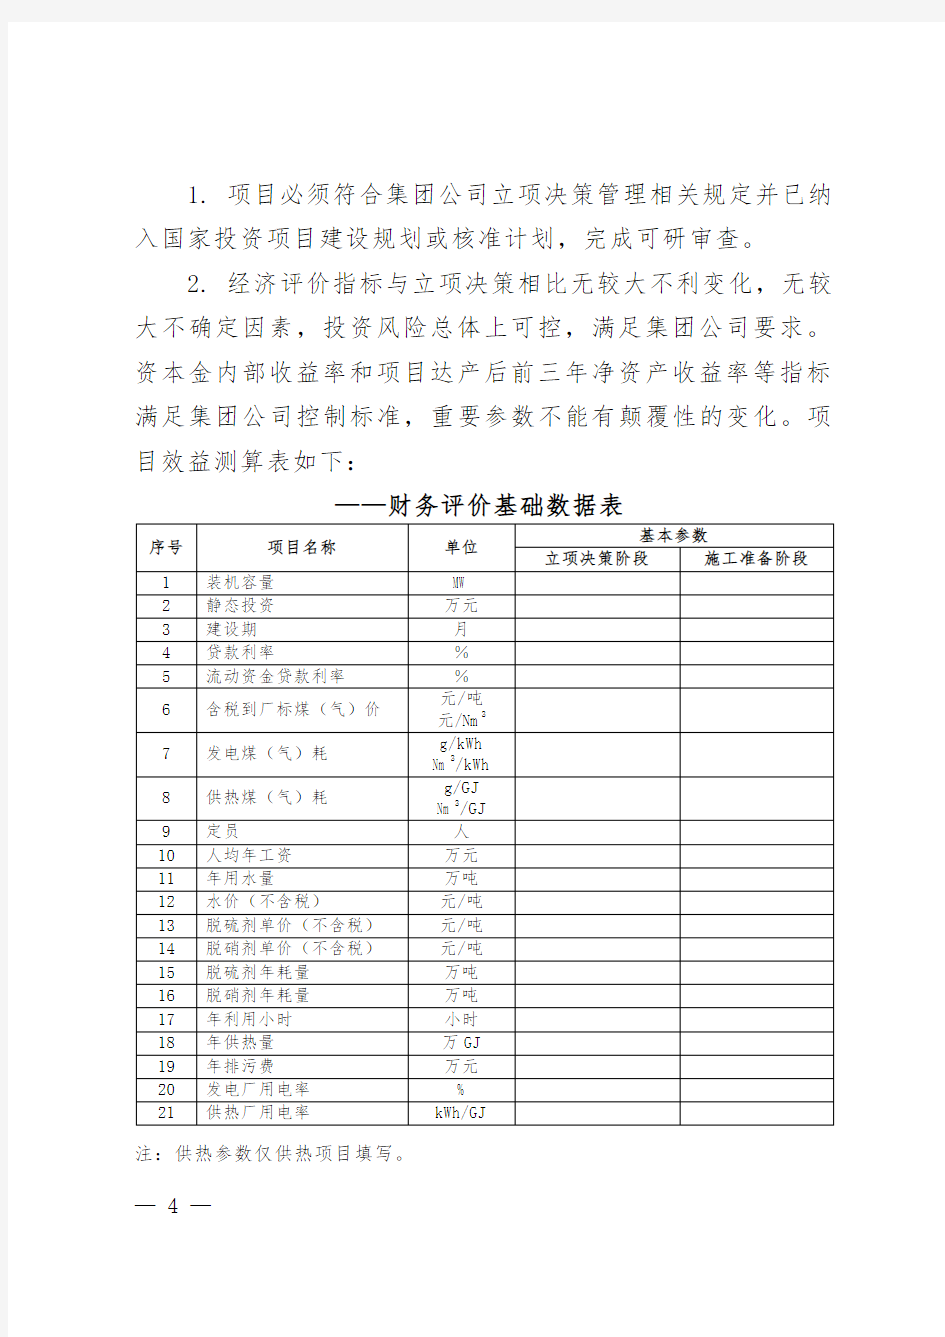 中国华电集团公司火电工程开工管理程序(B版)